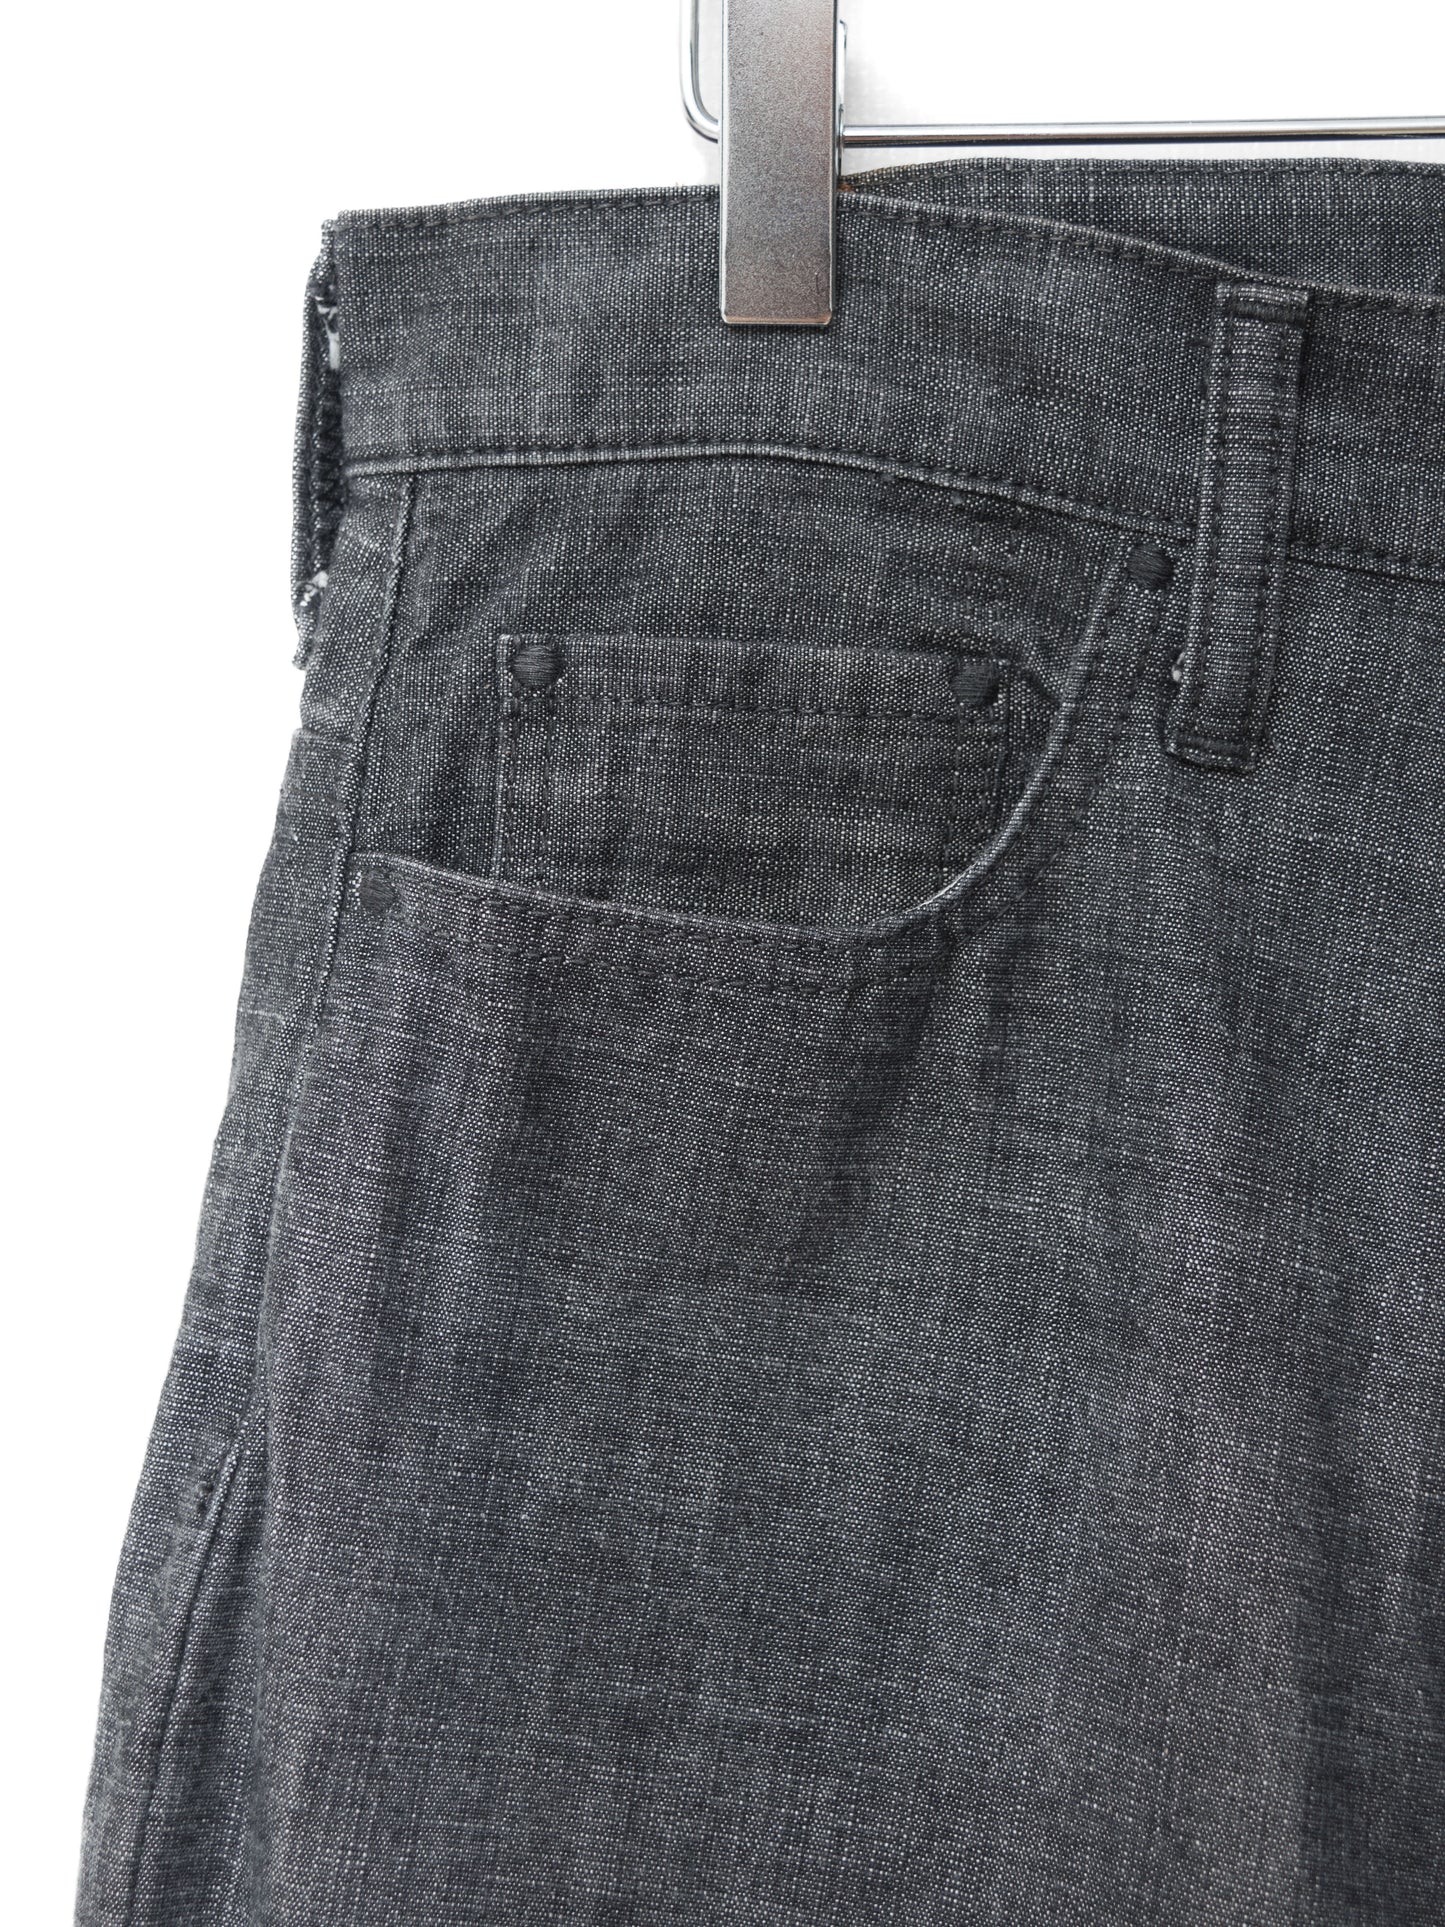 5p jeans graphite ∙ cotton ∙ medium